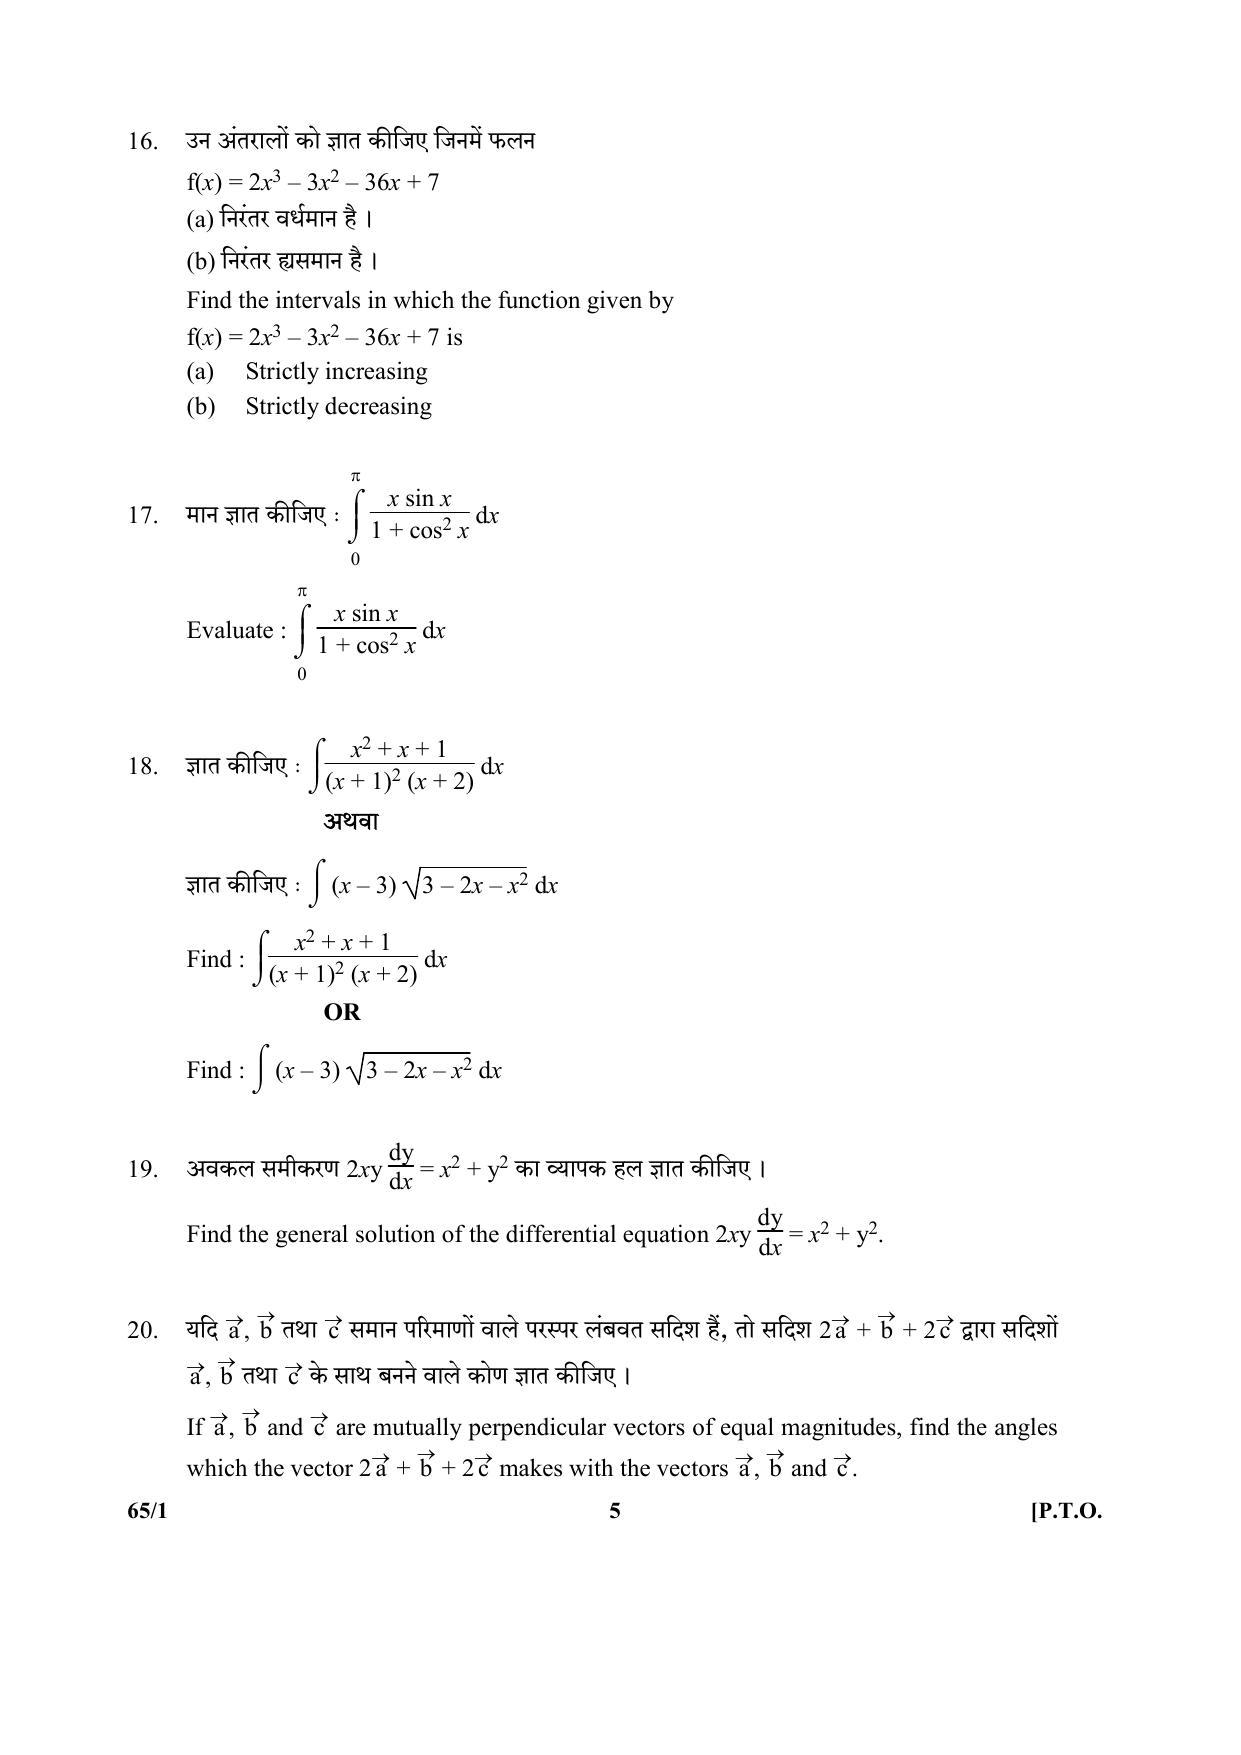 CBSE Class 12 65-1 (Mathematics) 2017-comptt Question Paper - Page 5